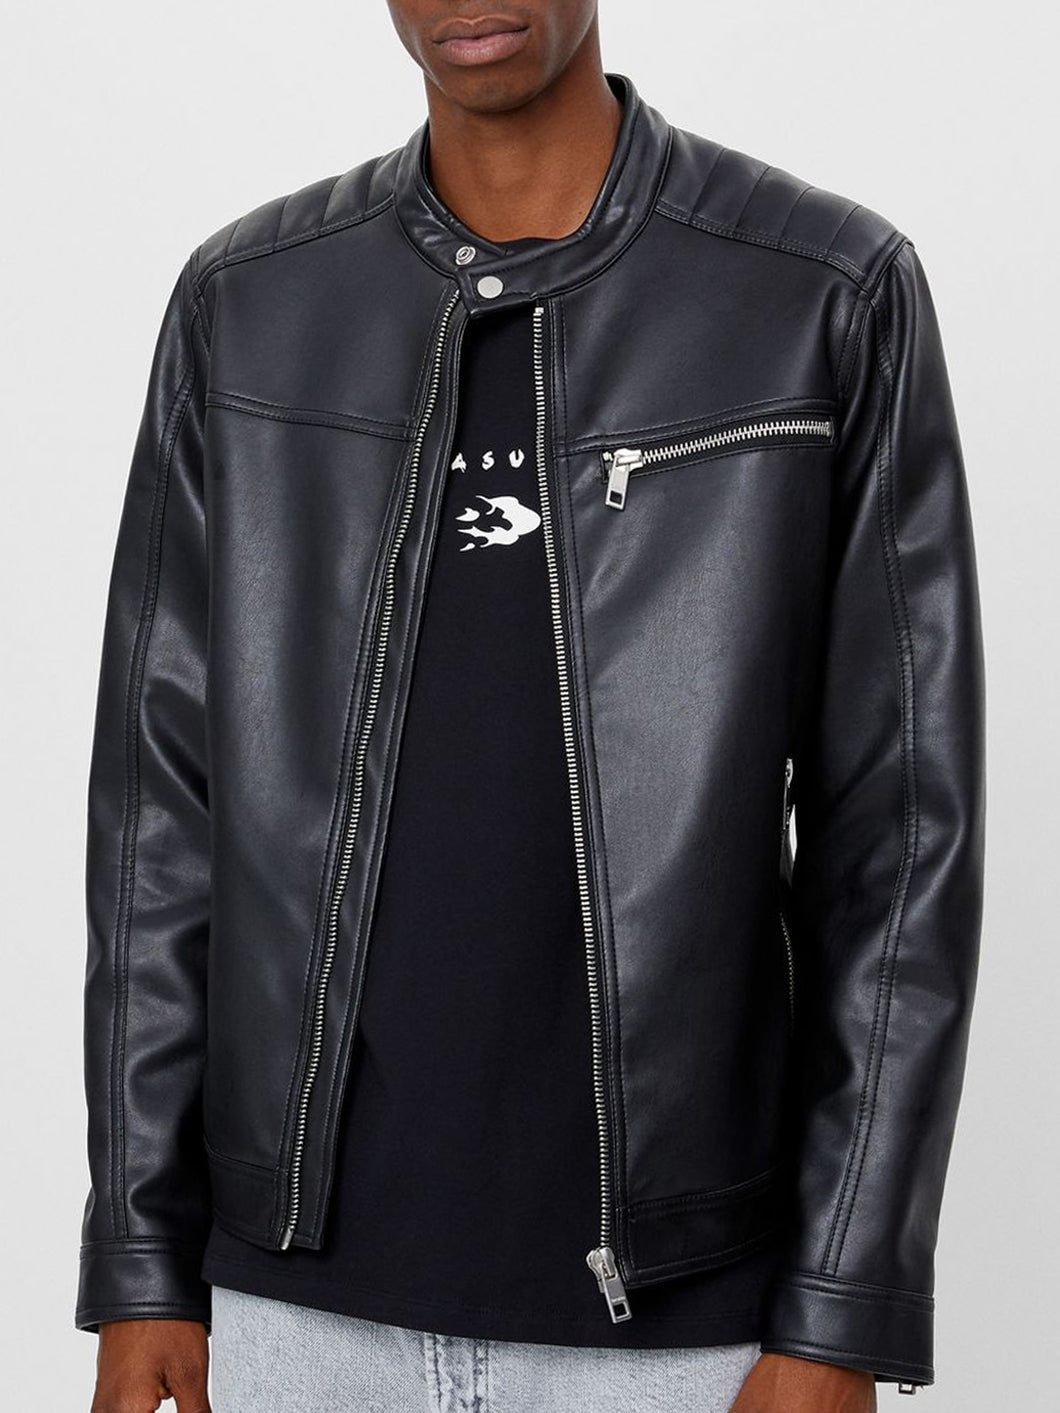 Genuine Black Leather Jacket Men